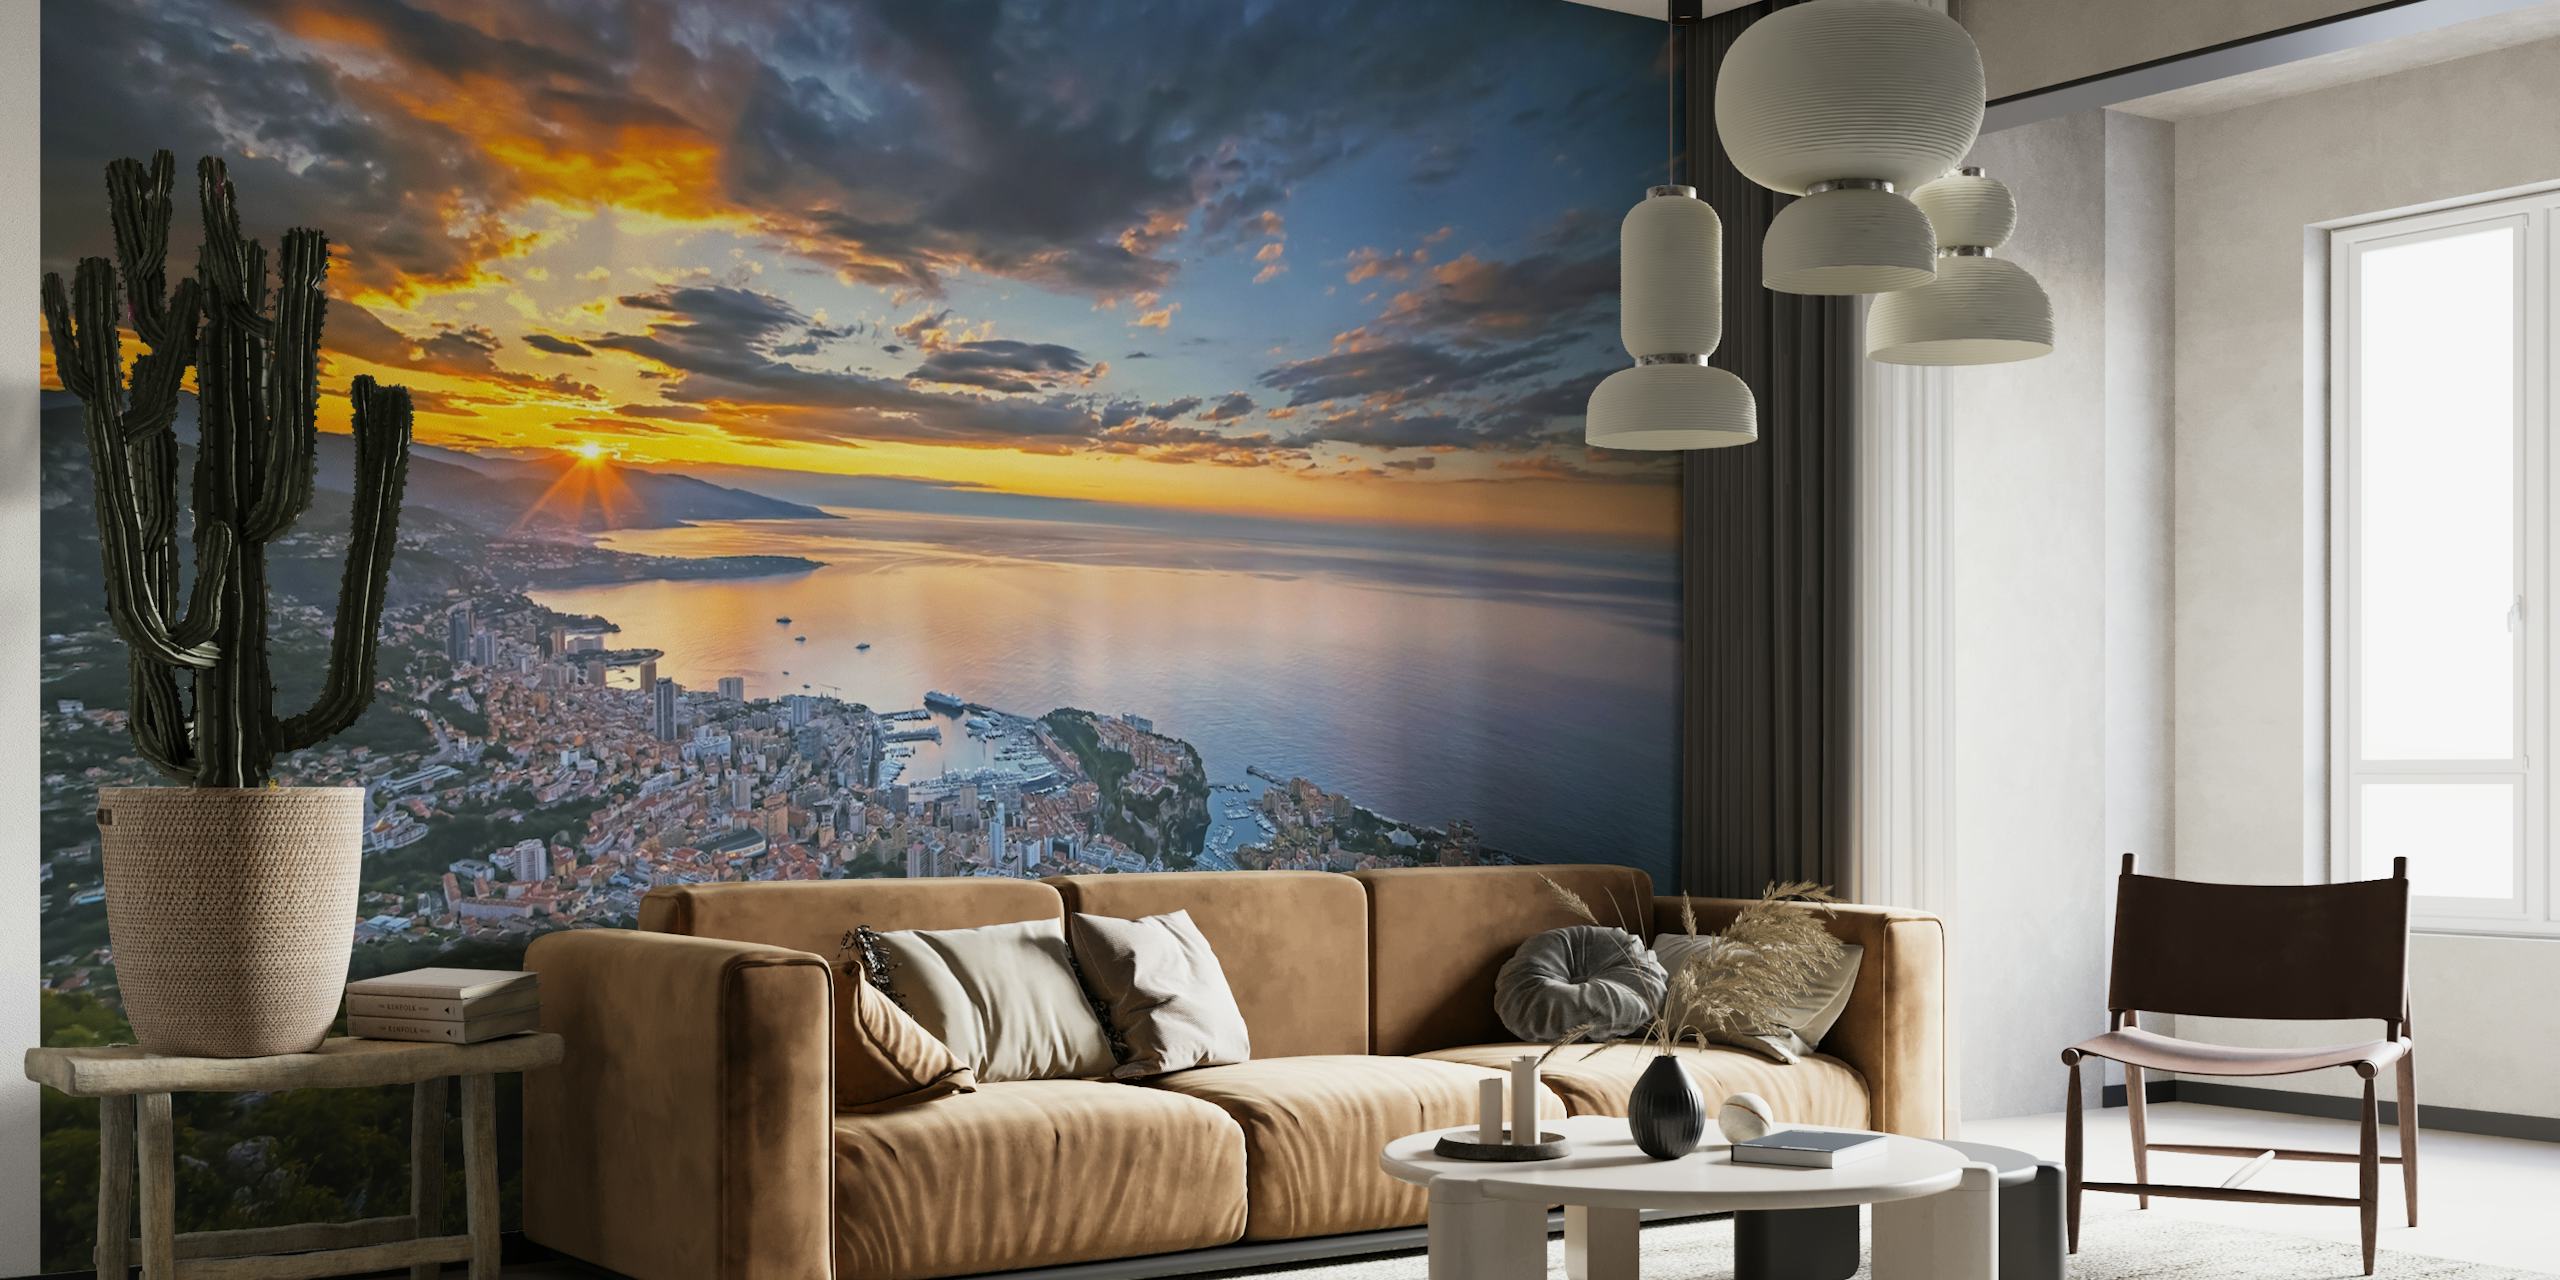 Izlazak sunca iznad zidne slike gradskog pejzaža Monaka s pogledom na ocean